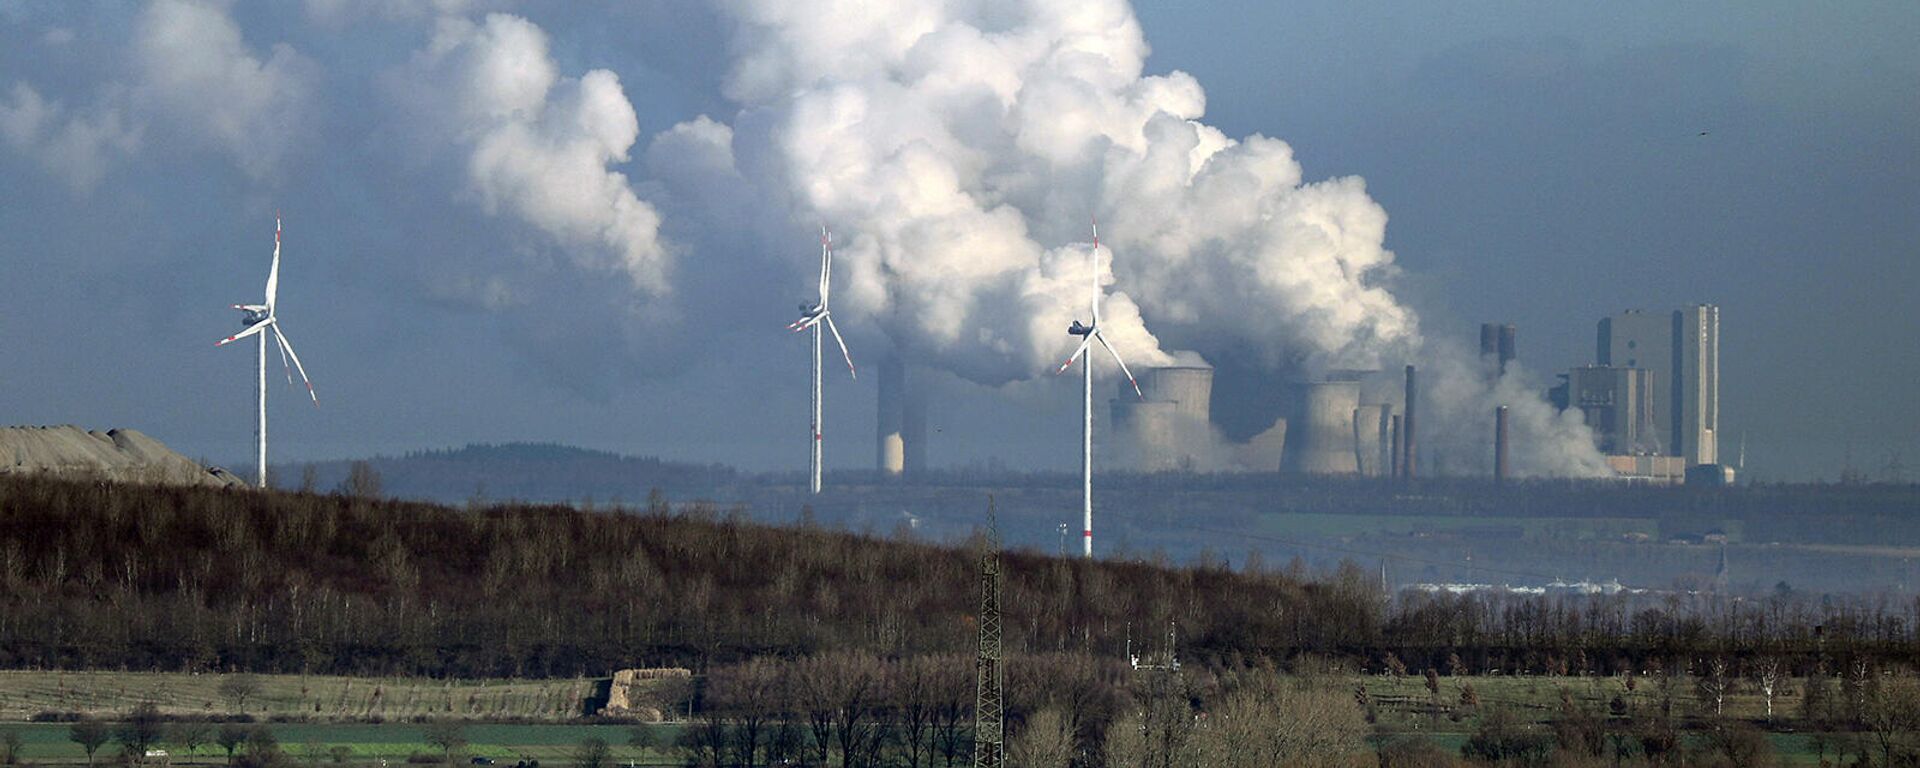 Հողմային էլեկտրական գեներատորներ ածխային էլեկտրակայանի ֆոնին - Sputnik Արմենիա, 1920, 29.09.2021